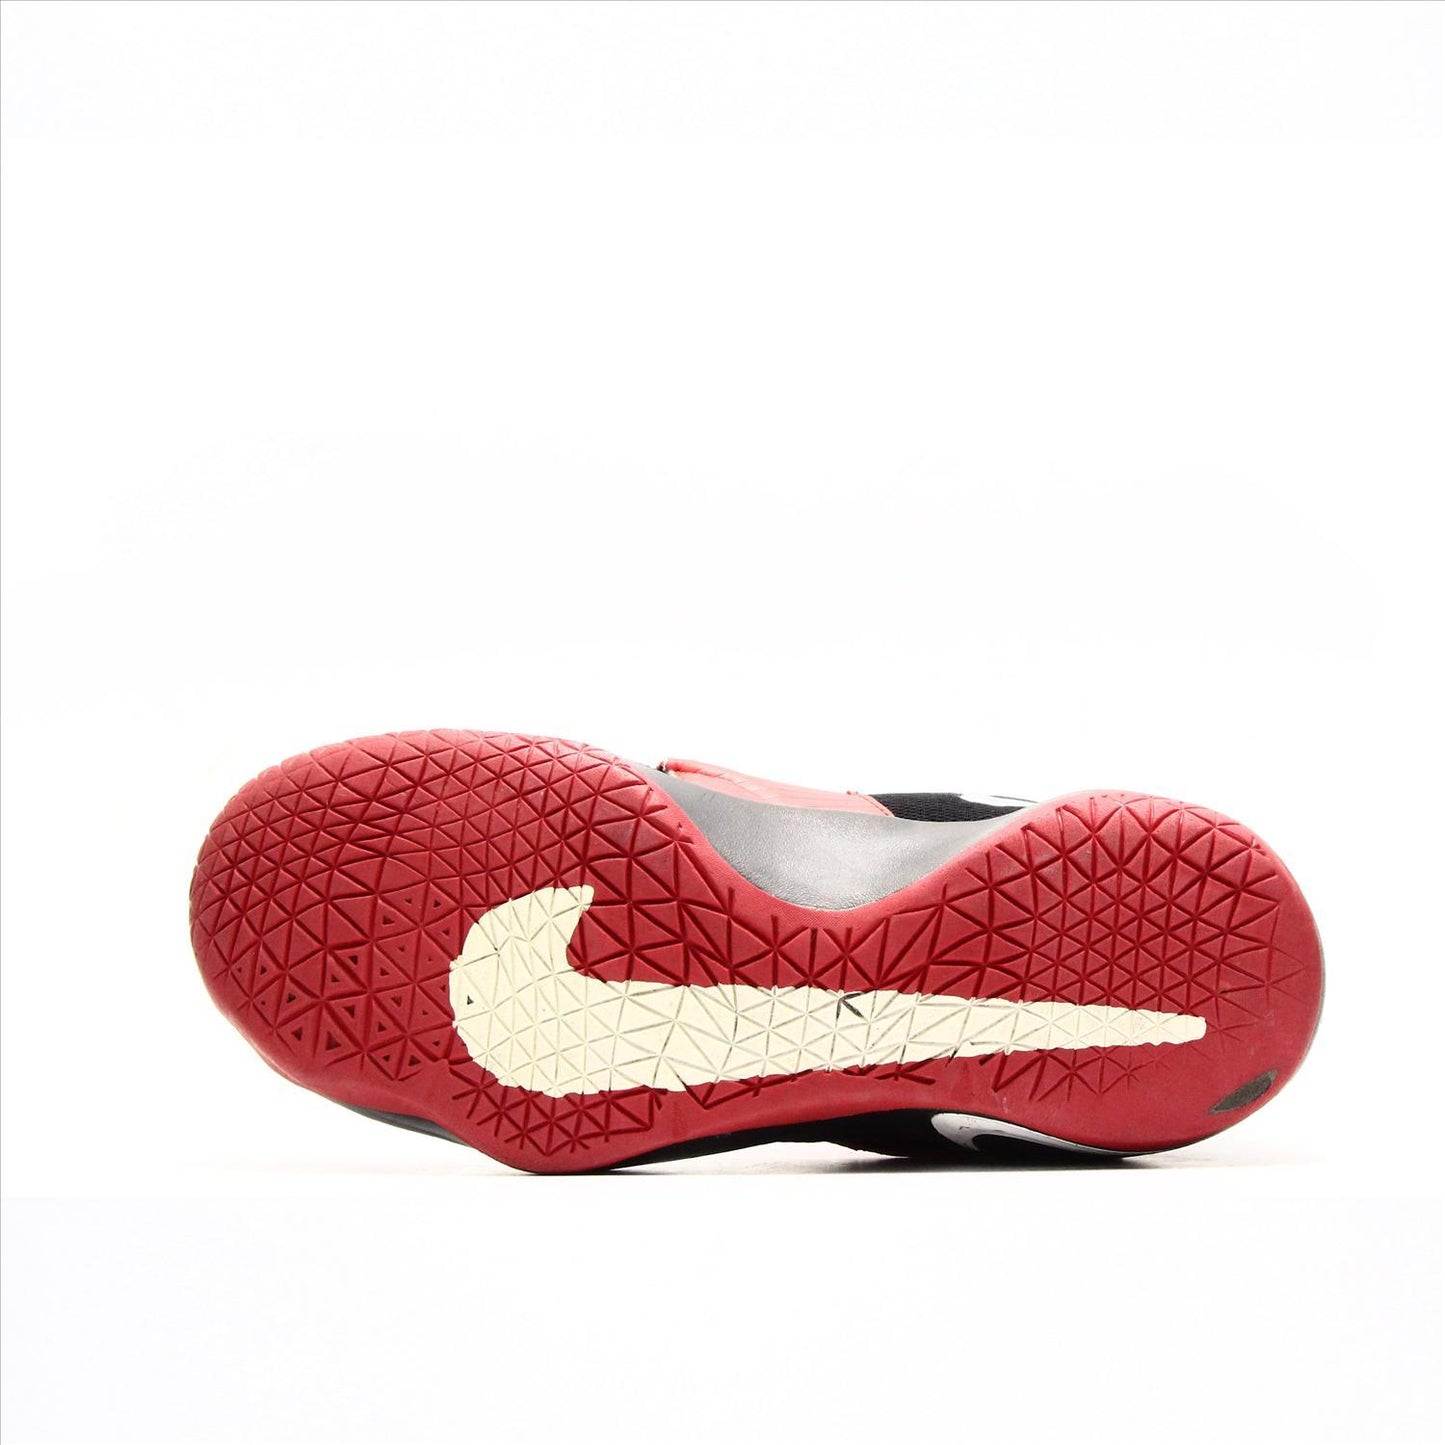 Nike Zoom